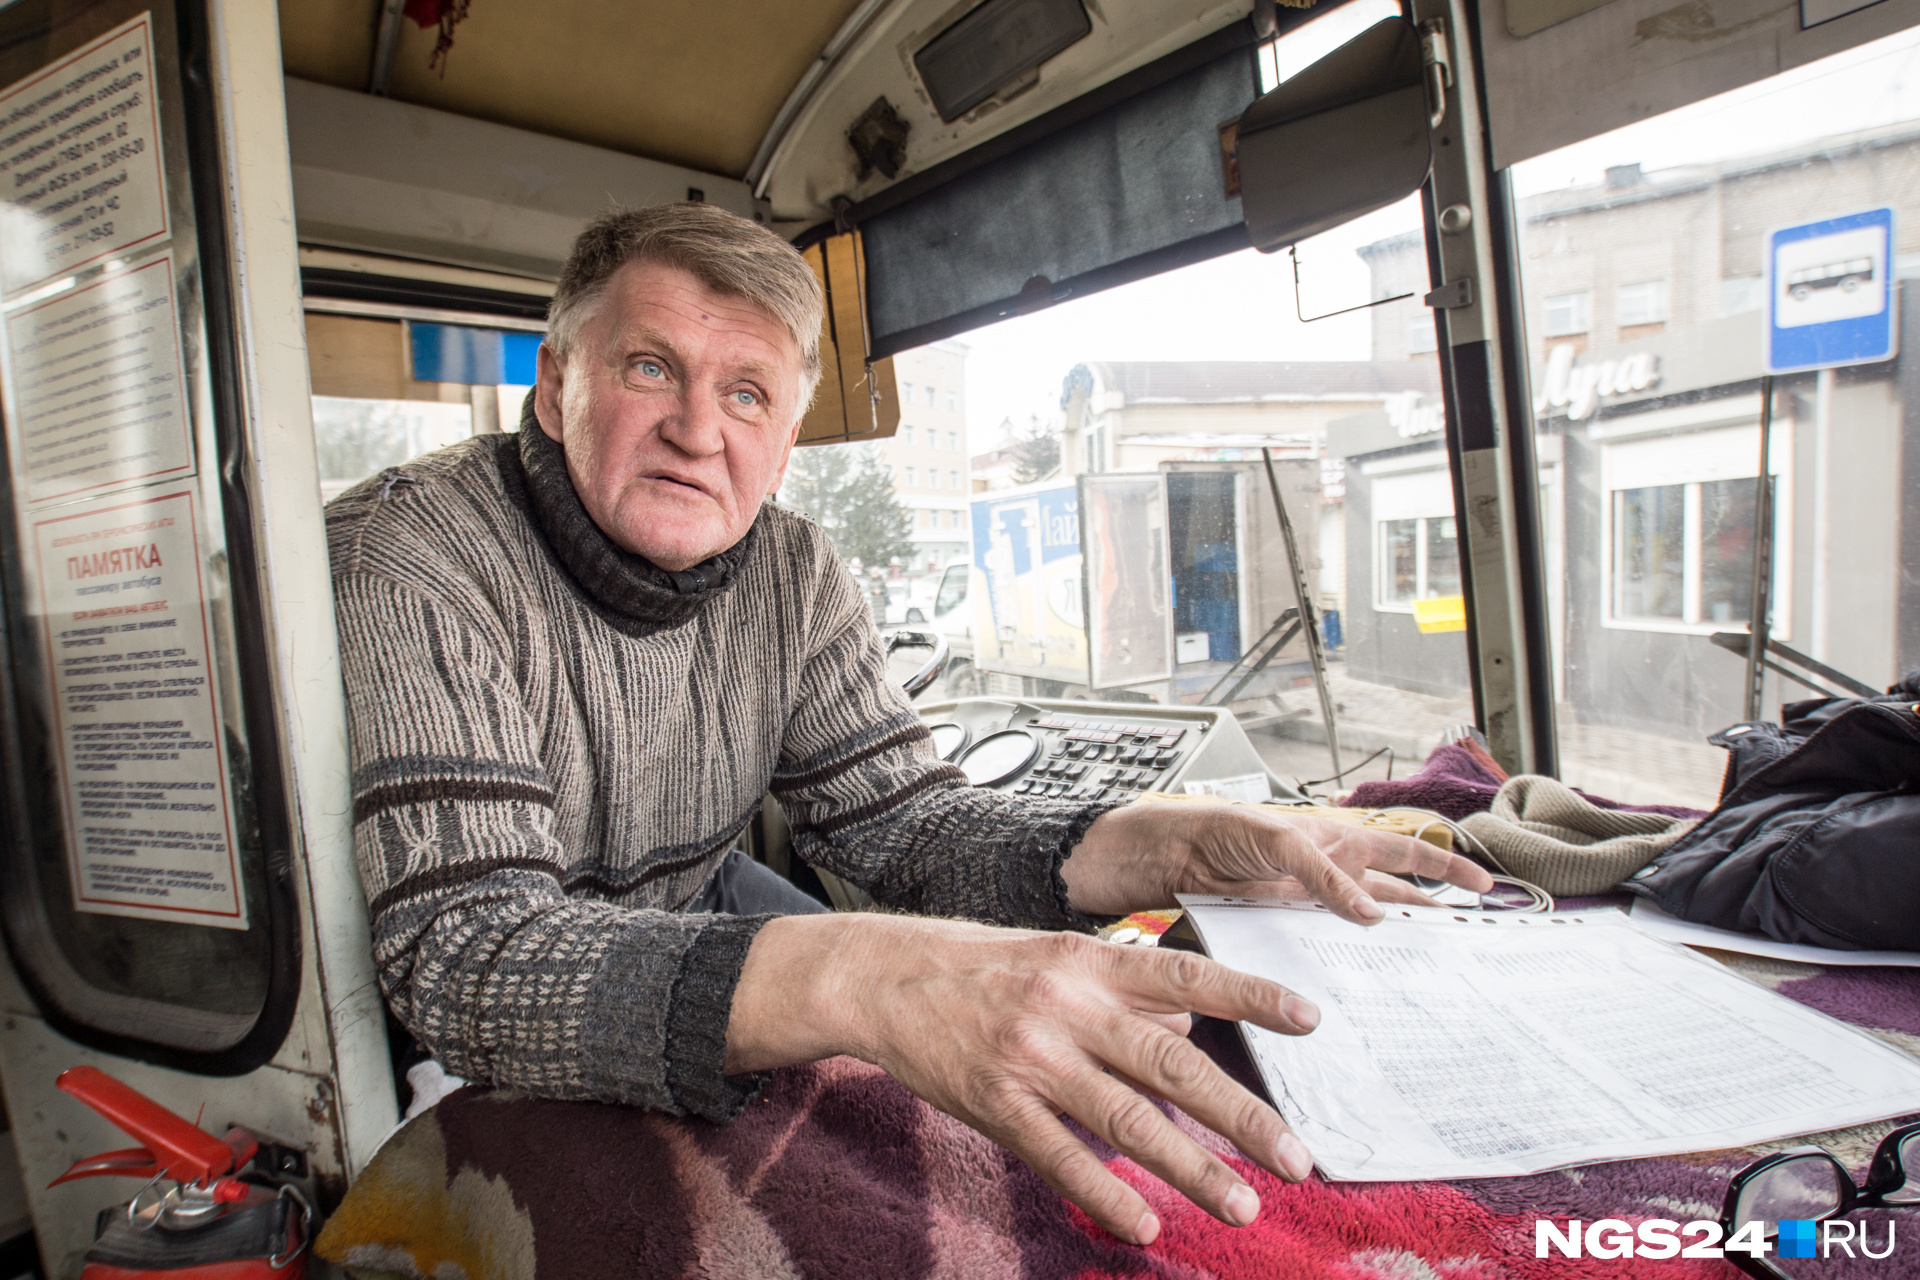 Водитель маршрутки Андрей за 3 года работы водителем закрыл ипотеку в Новосибирске. В Красноярск он приезжает на 3-недельную вахту, «И работает, как никто не работает»